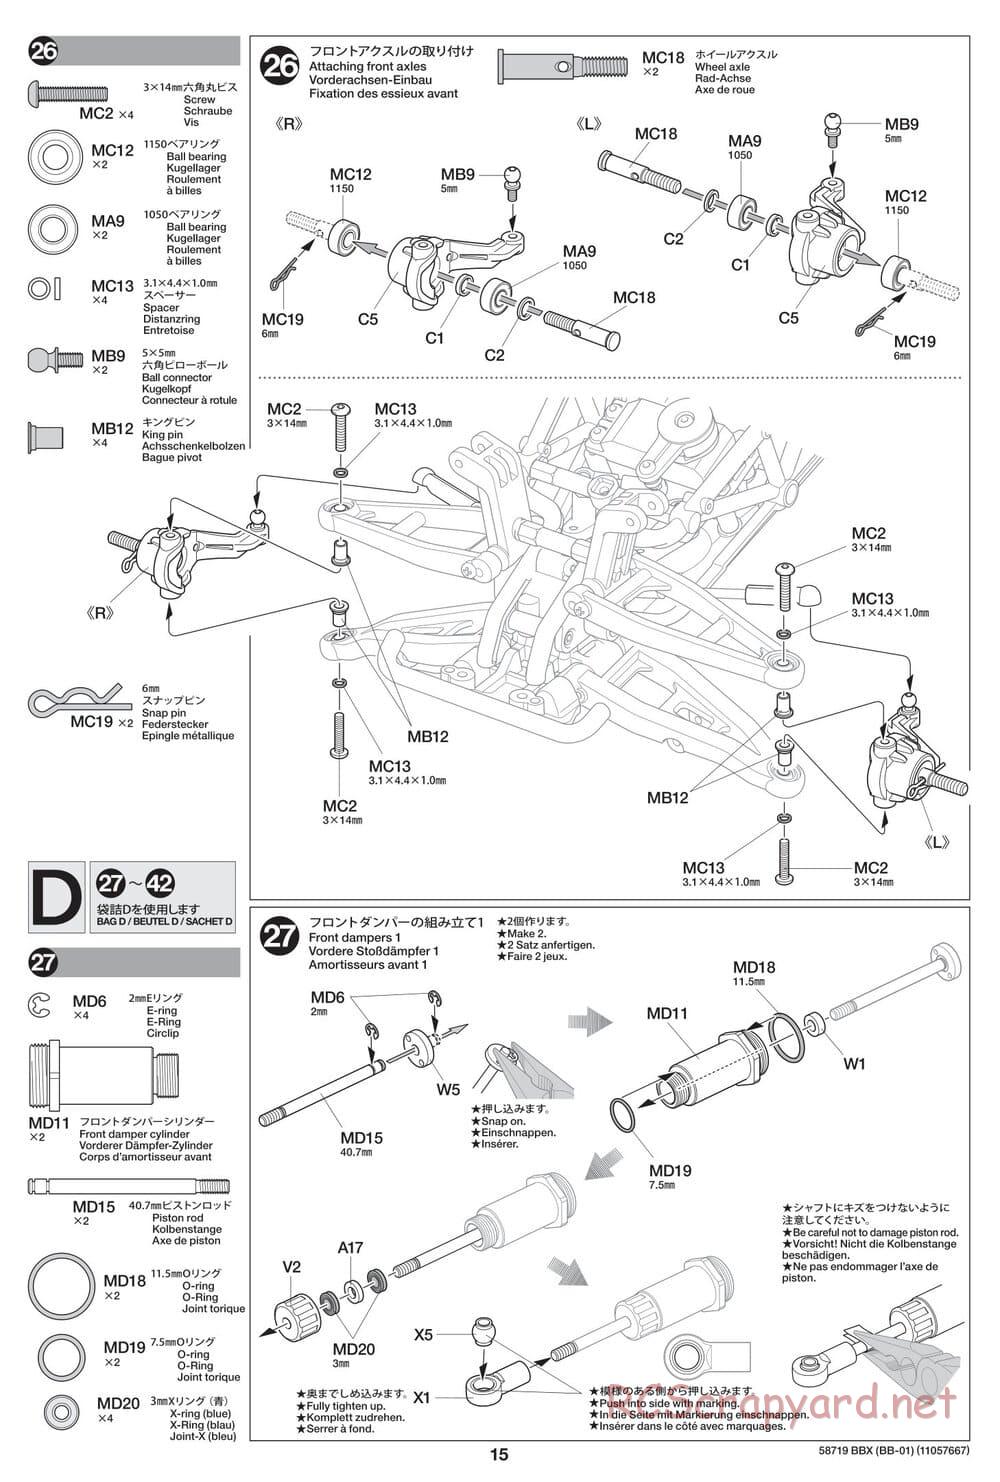 Tamiya - BBX - BB-01 Chassis - Manual - Page 15